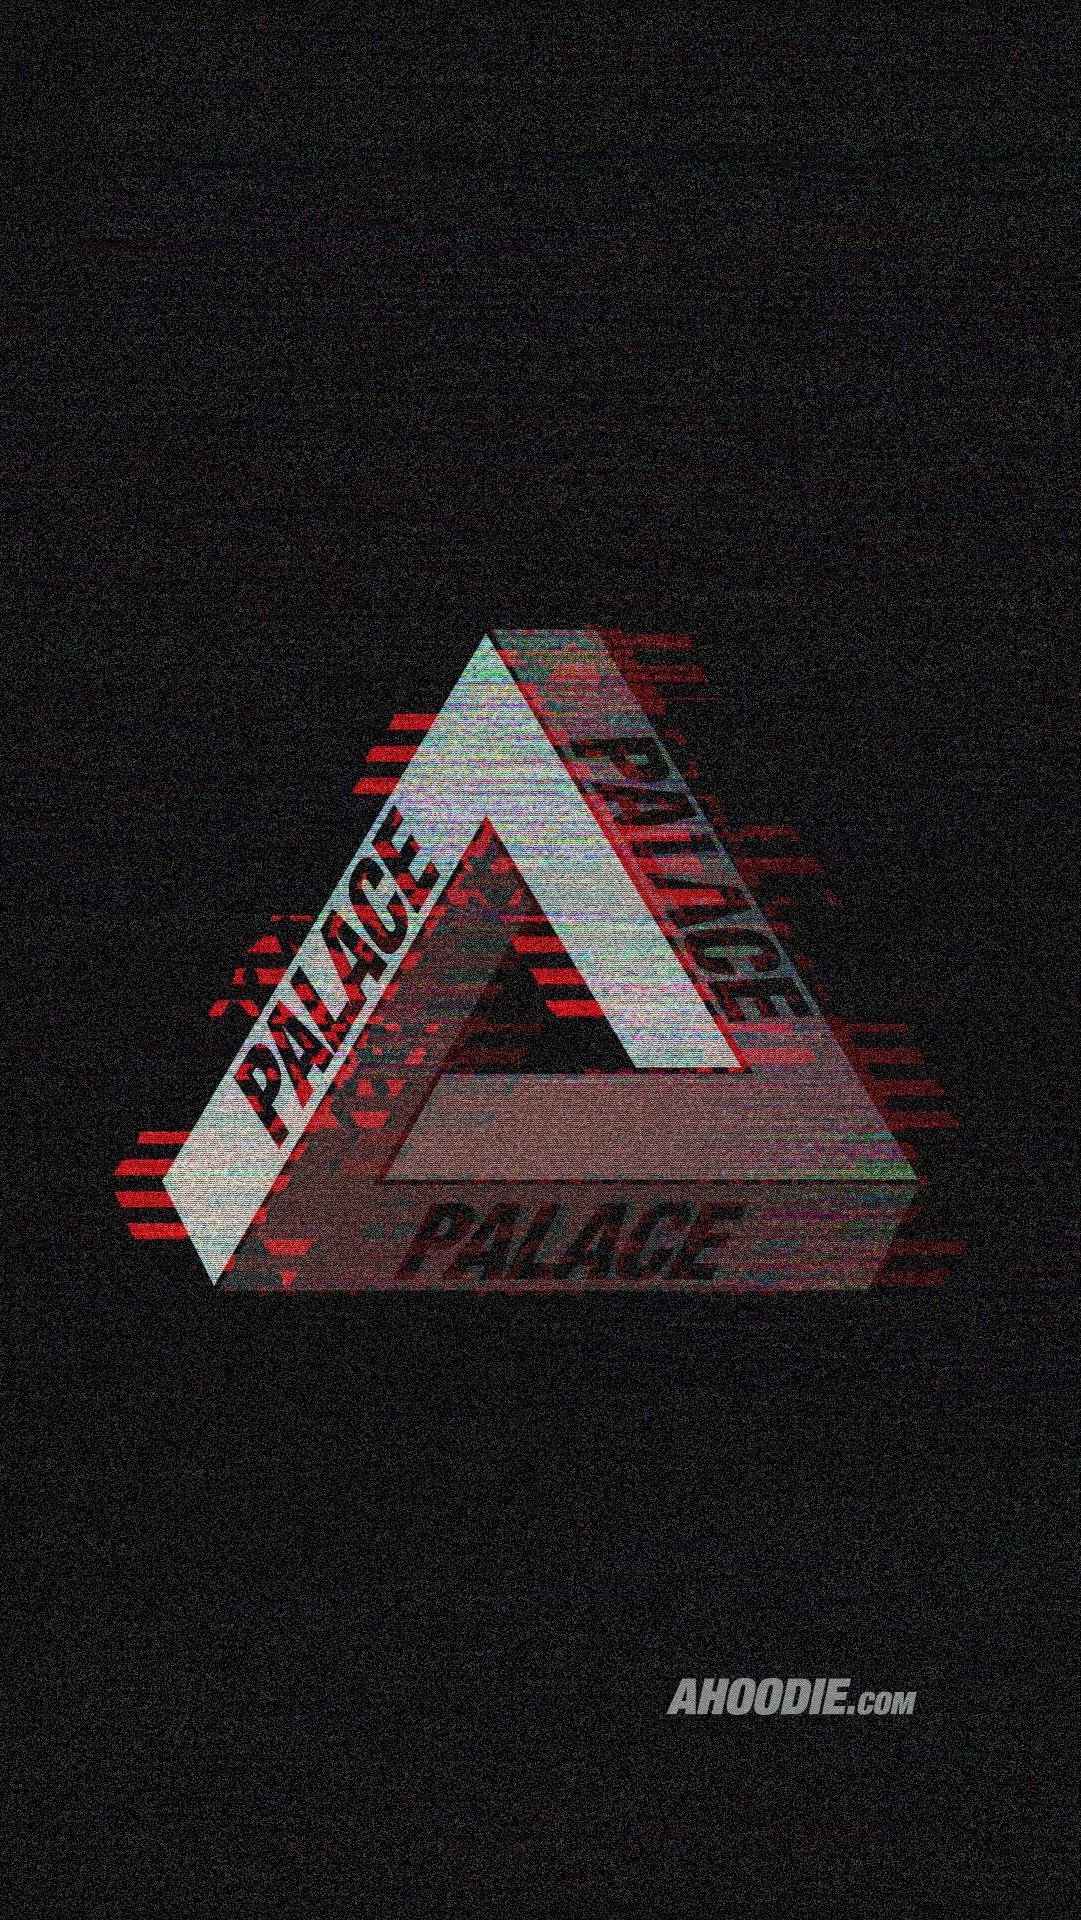 Palace Skateboards Glitch Design Background